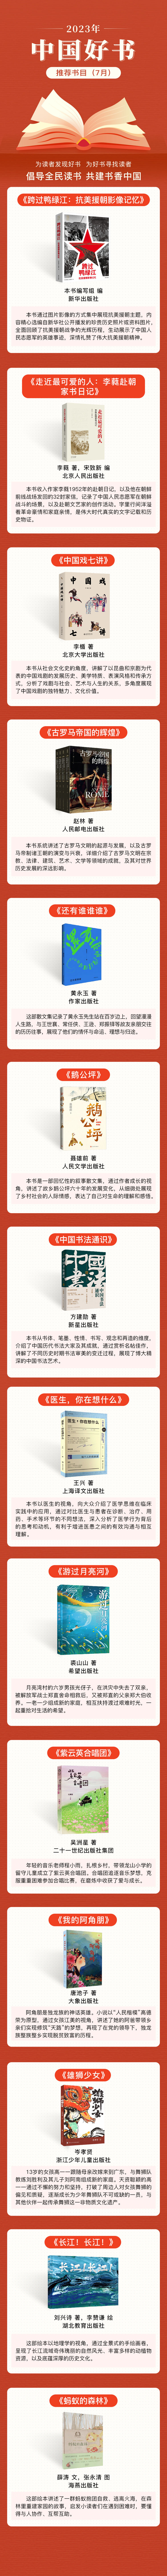 2023年7月“中国好书”推荐书目发布